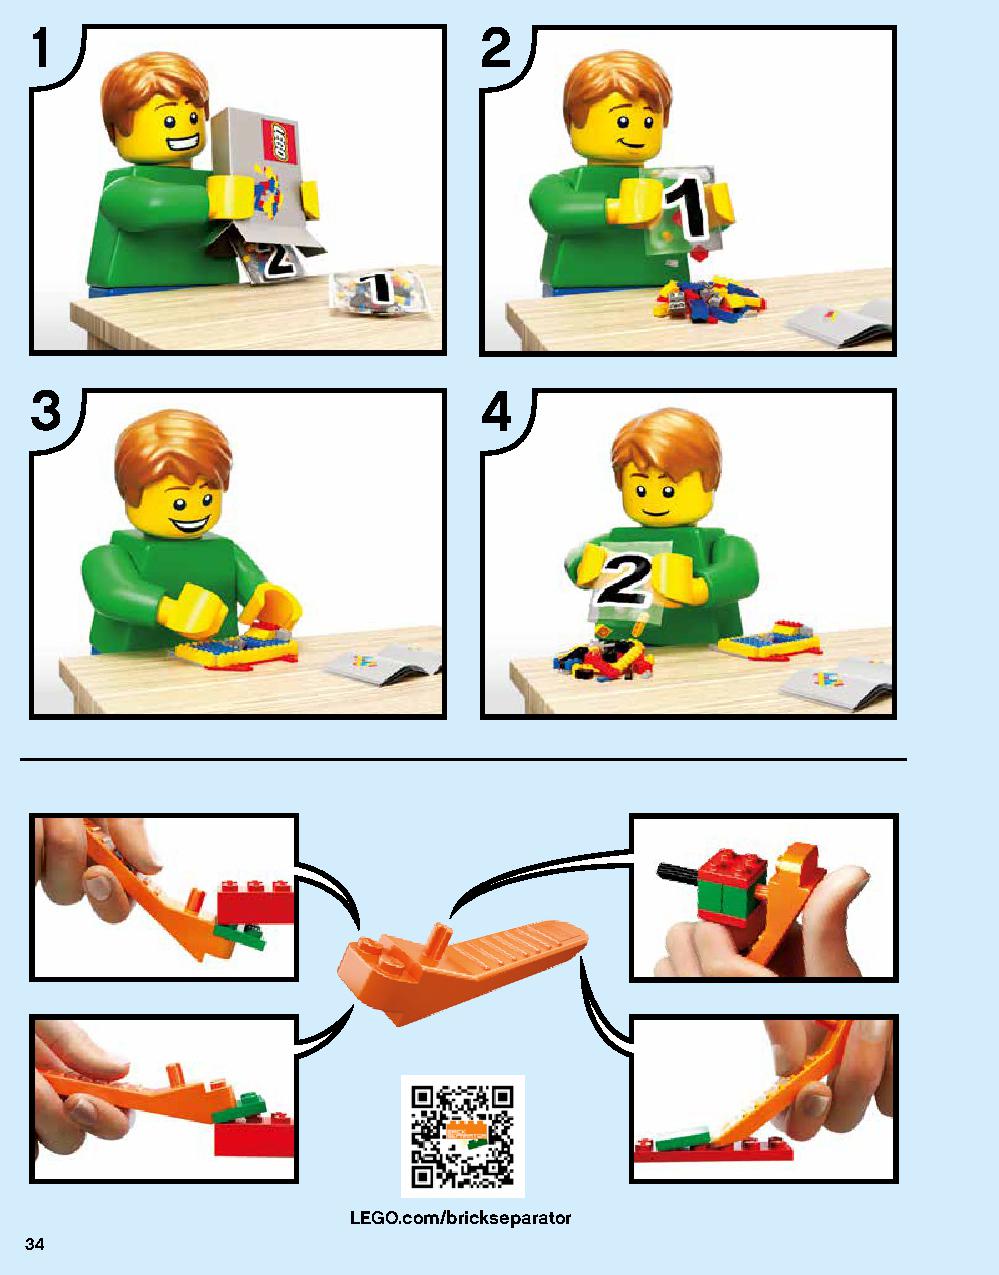 ニンジャゴー シティ 70620 レゴの商品情報 レゴの説明書・組立方法 34 page